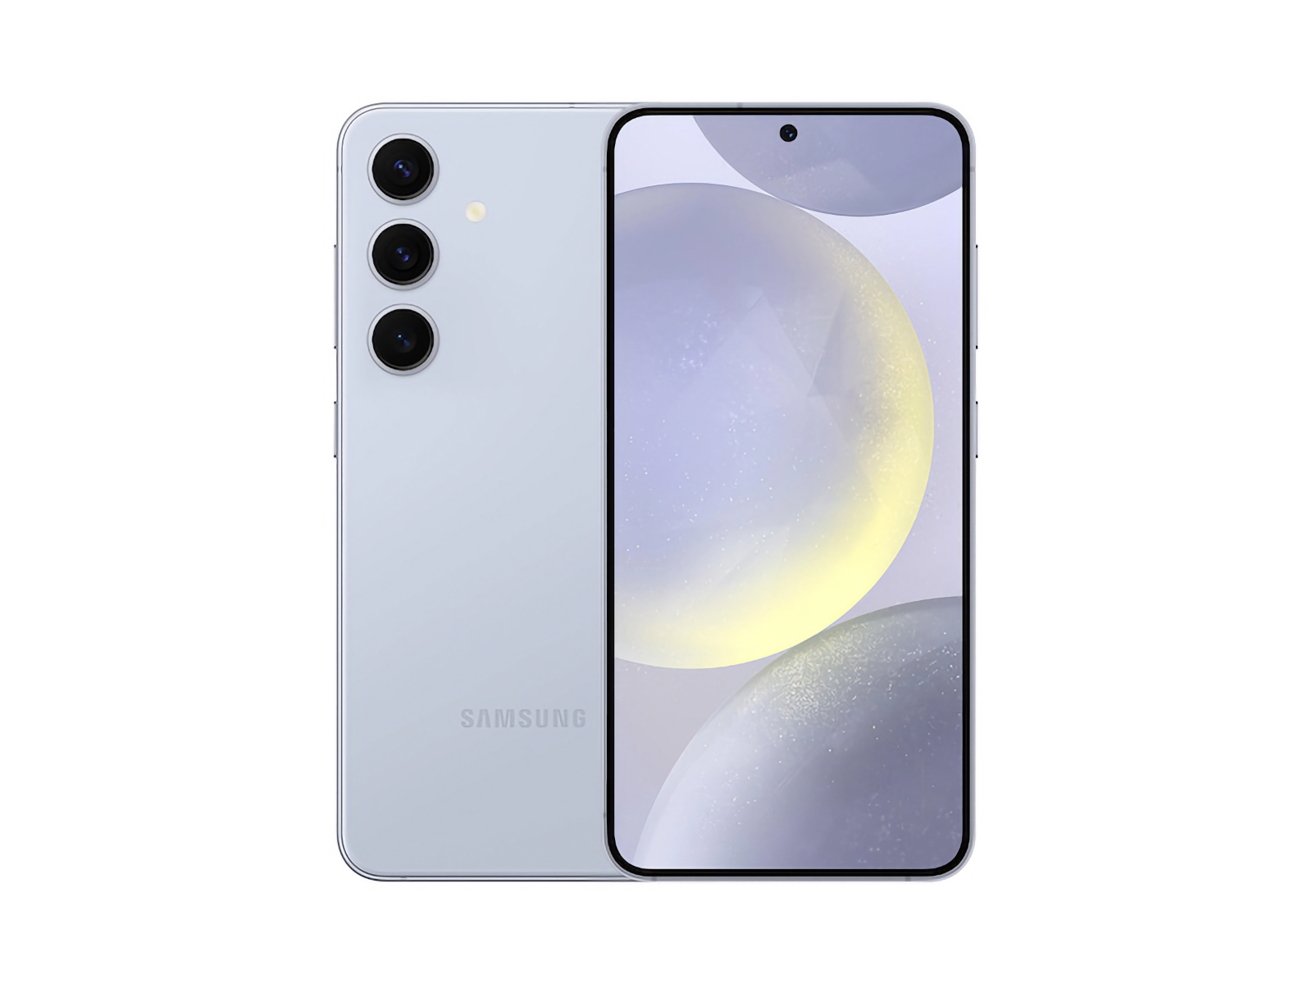 Смартфон Samsung, вид спереди и сзади, с тройной камерой сзади и фронтальной камерой с дырочкой на почти безрамочном экране.